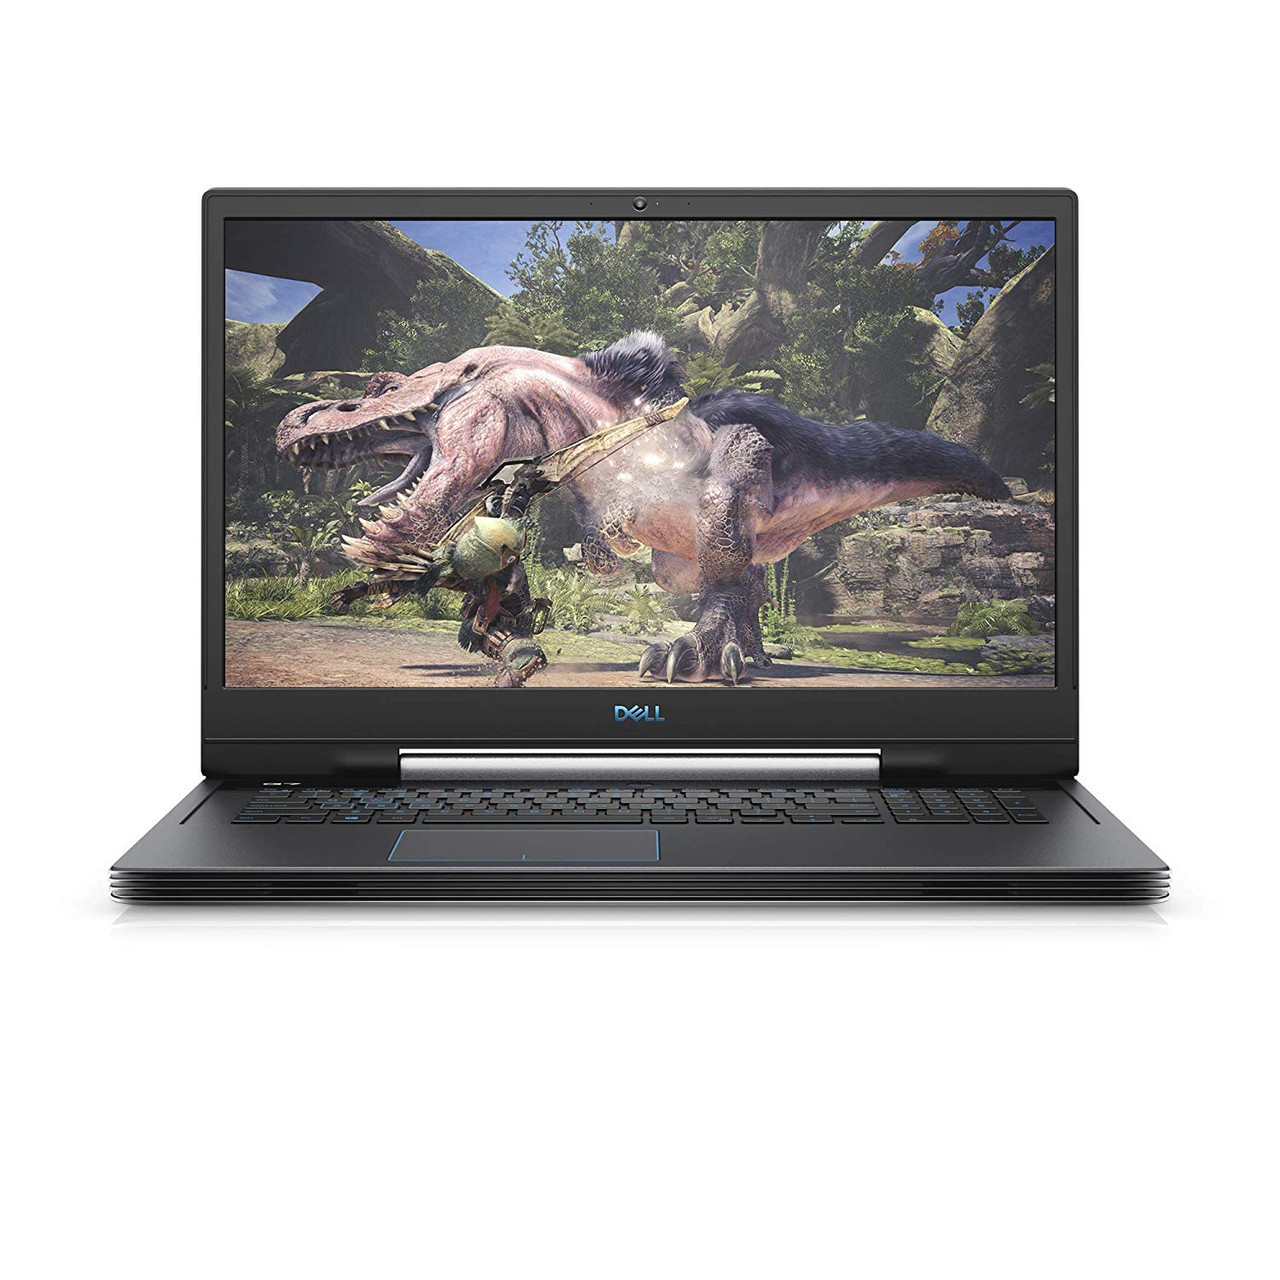 Dell G7 17 Gaming Laptop: Core NVidia RTX 2060, 16GB RAM, 256GB SSD + 1TB HDD, 17.3" Full HD Display Klick Online